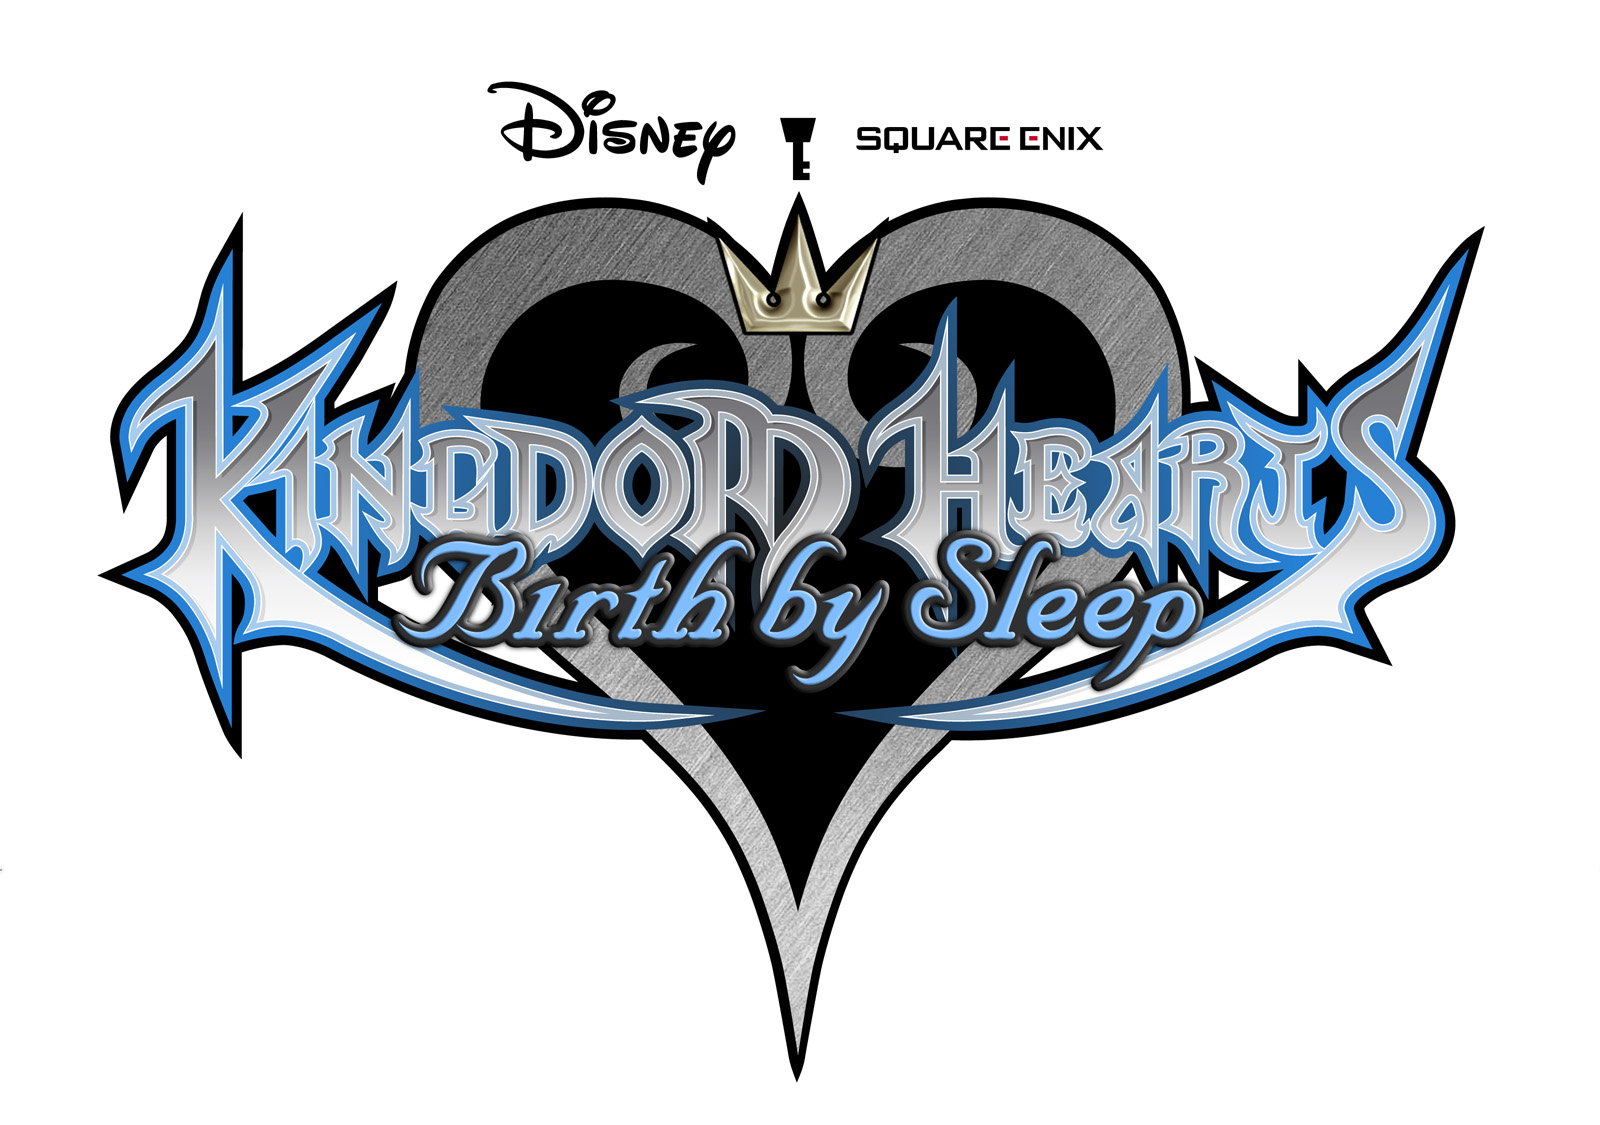 Kingdom Hearts: Birth by Sleep, Whumpapedia Wiki